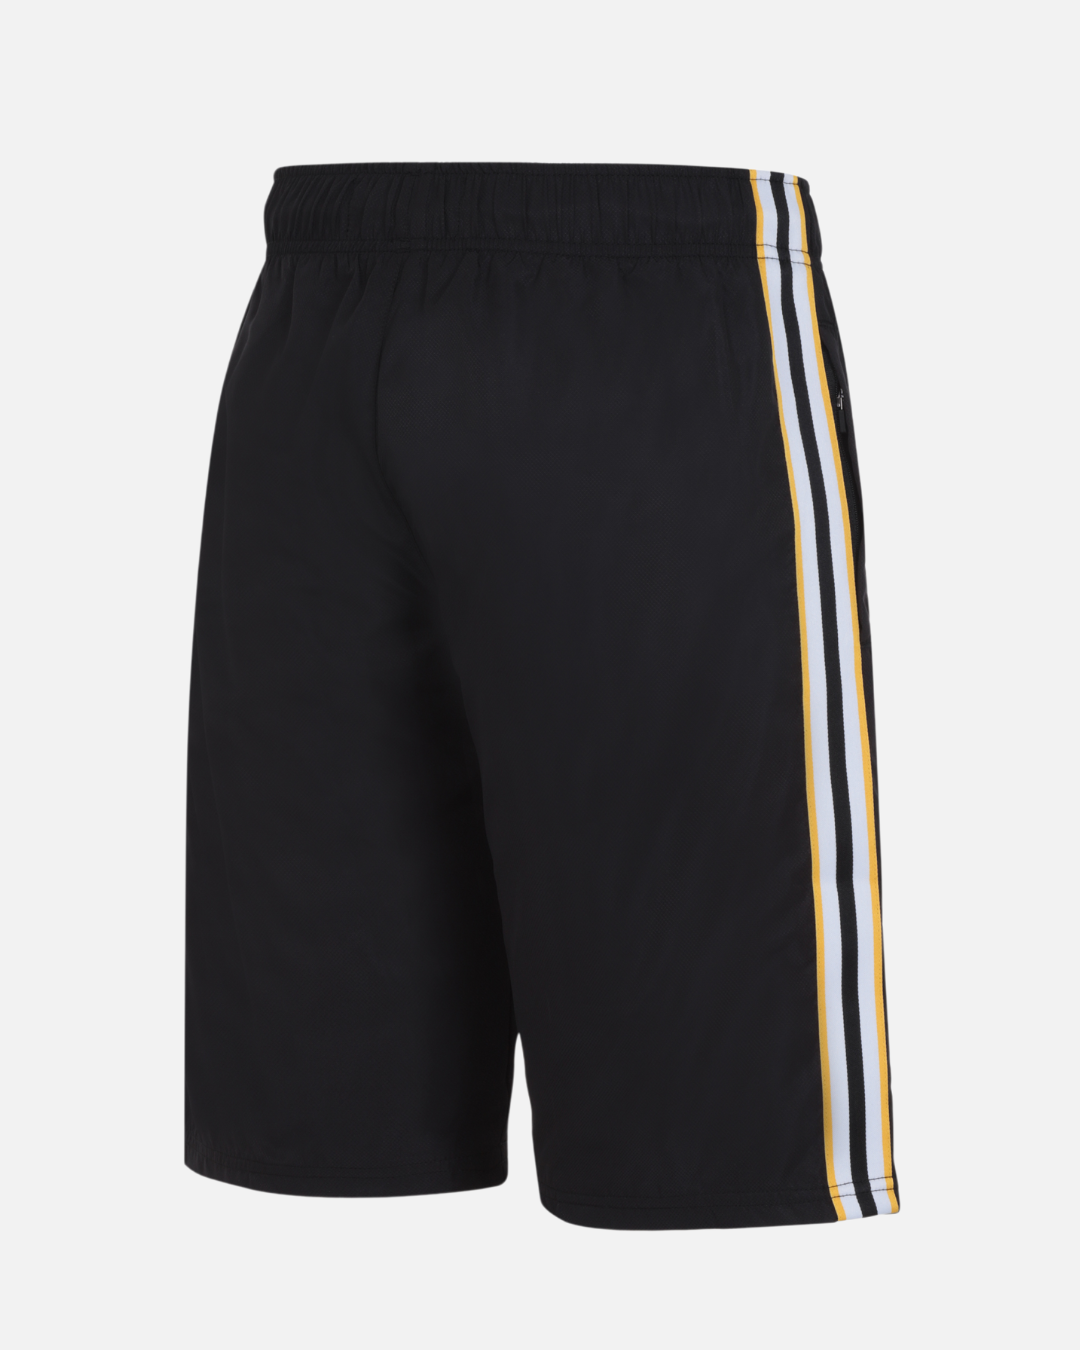 FK Teams Shorts - Black/Yellow/White